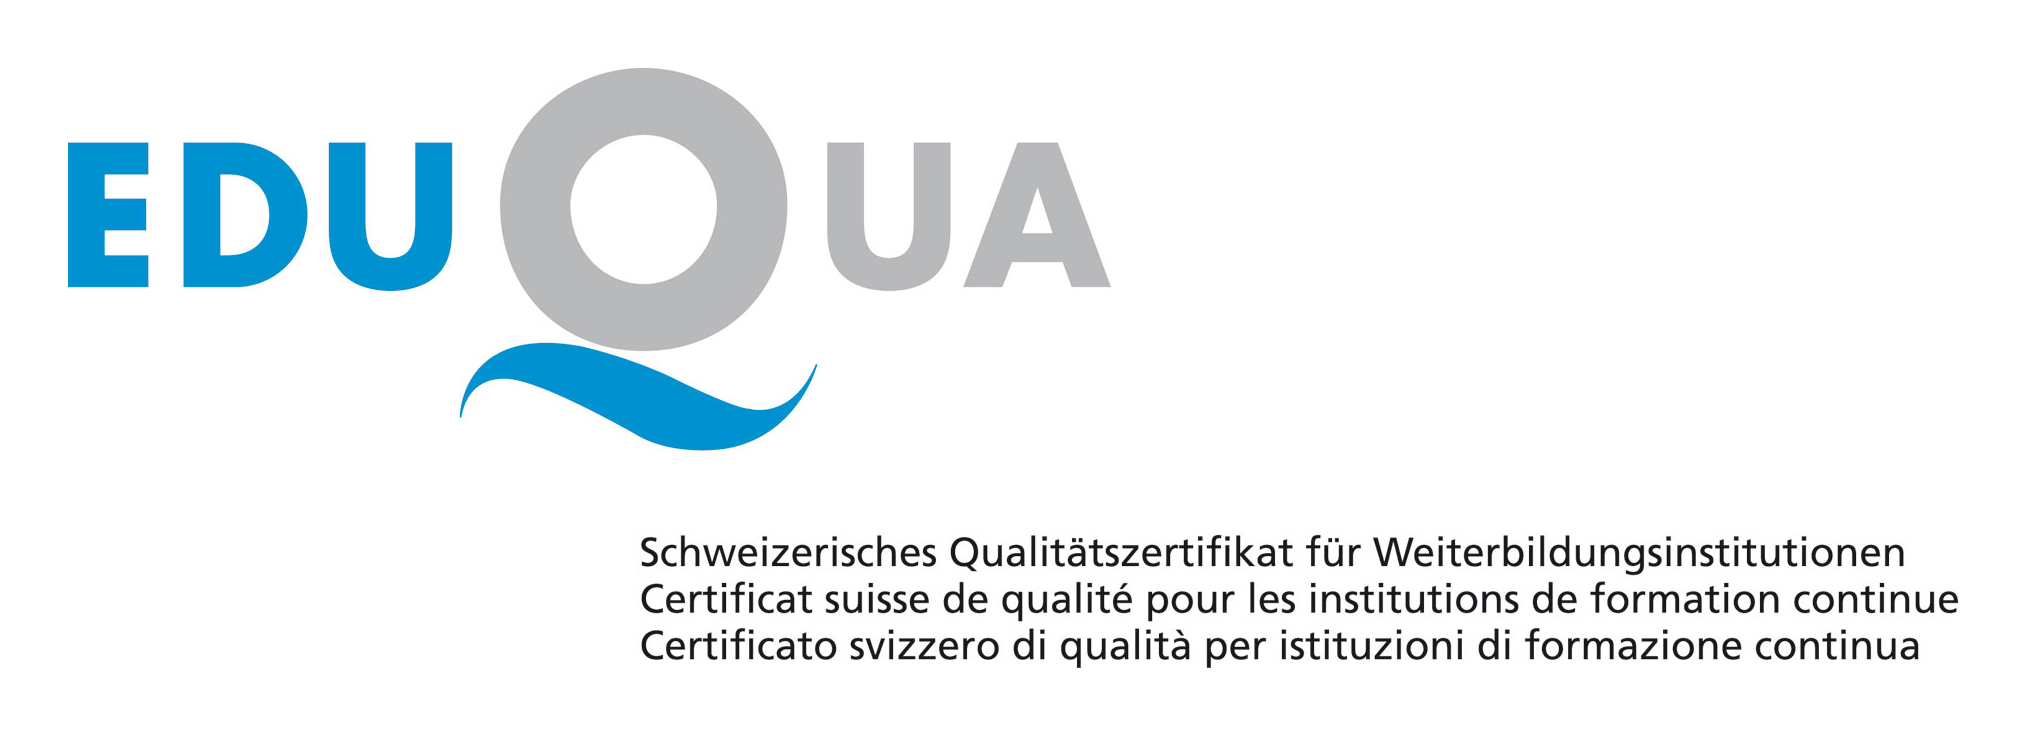 Certification Eduqua